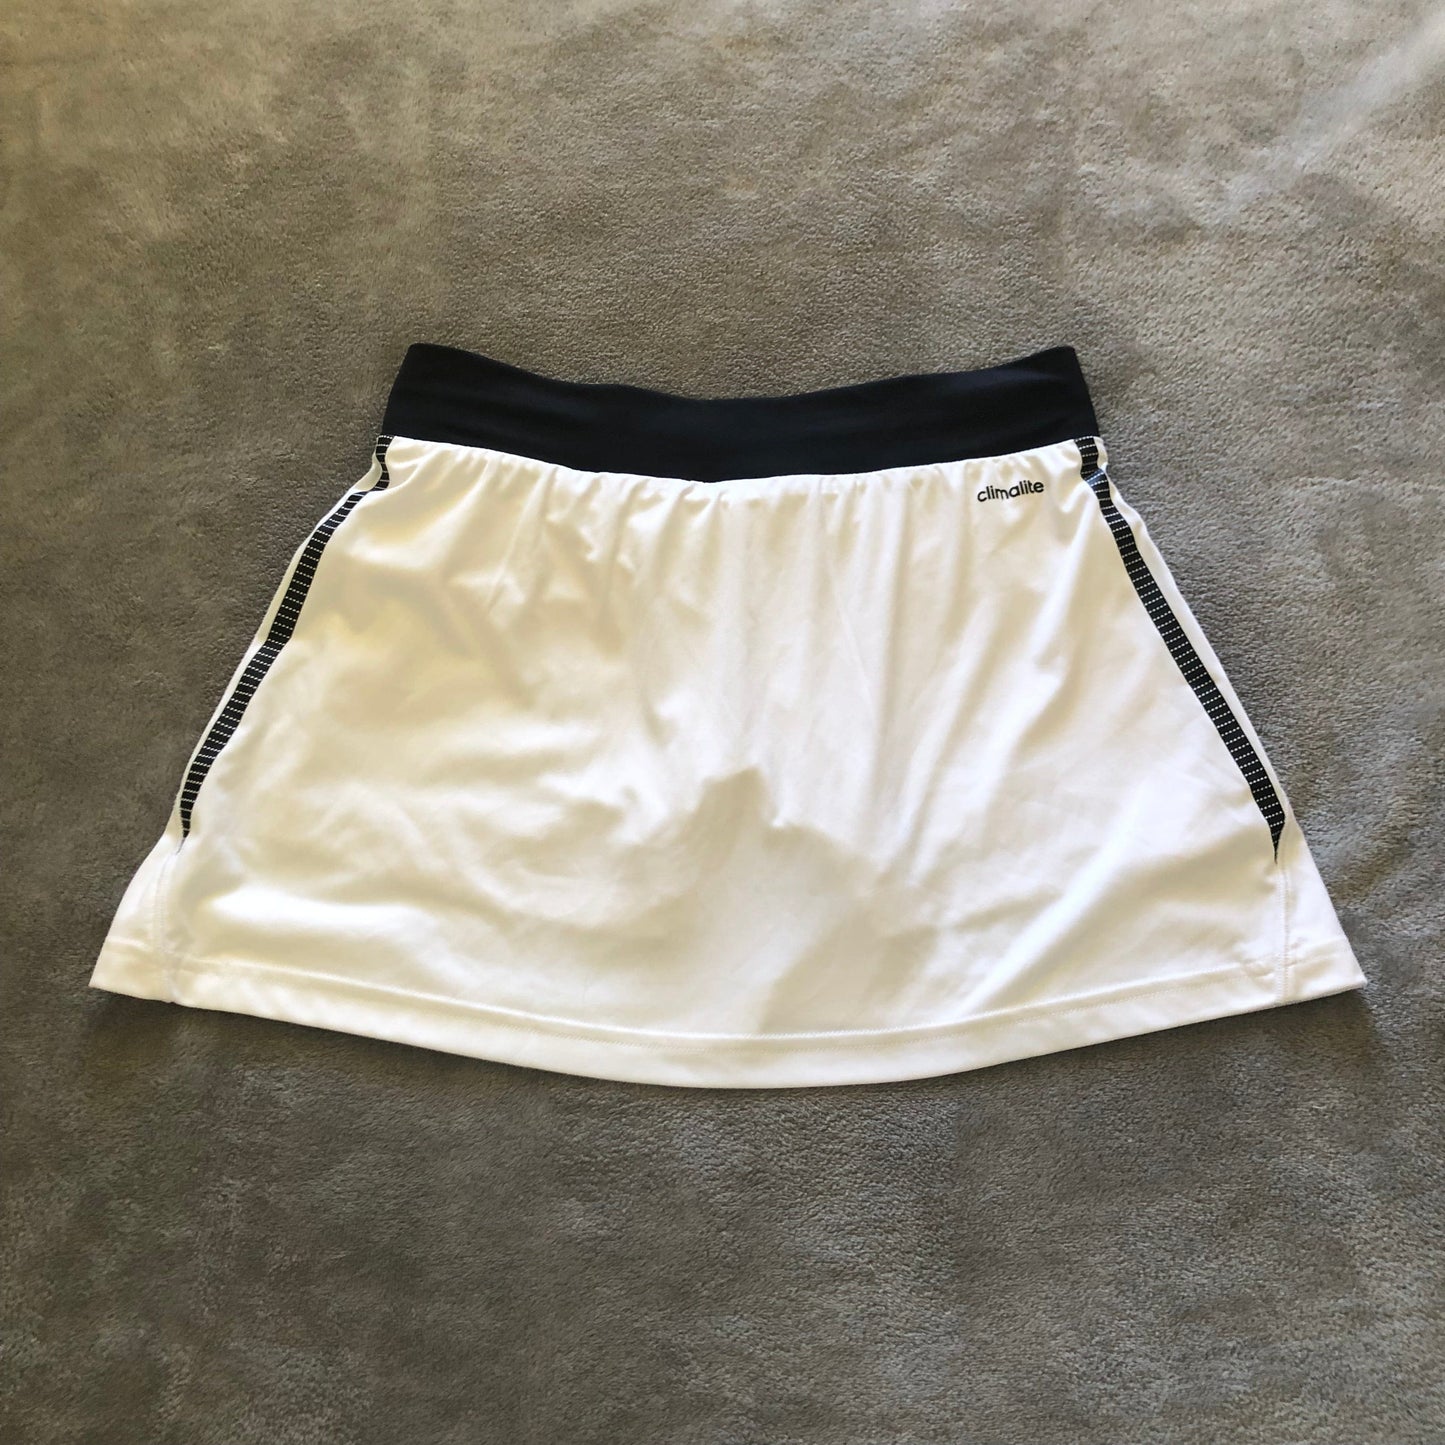 Adidas mini skirt